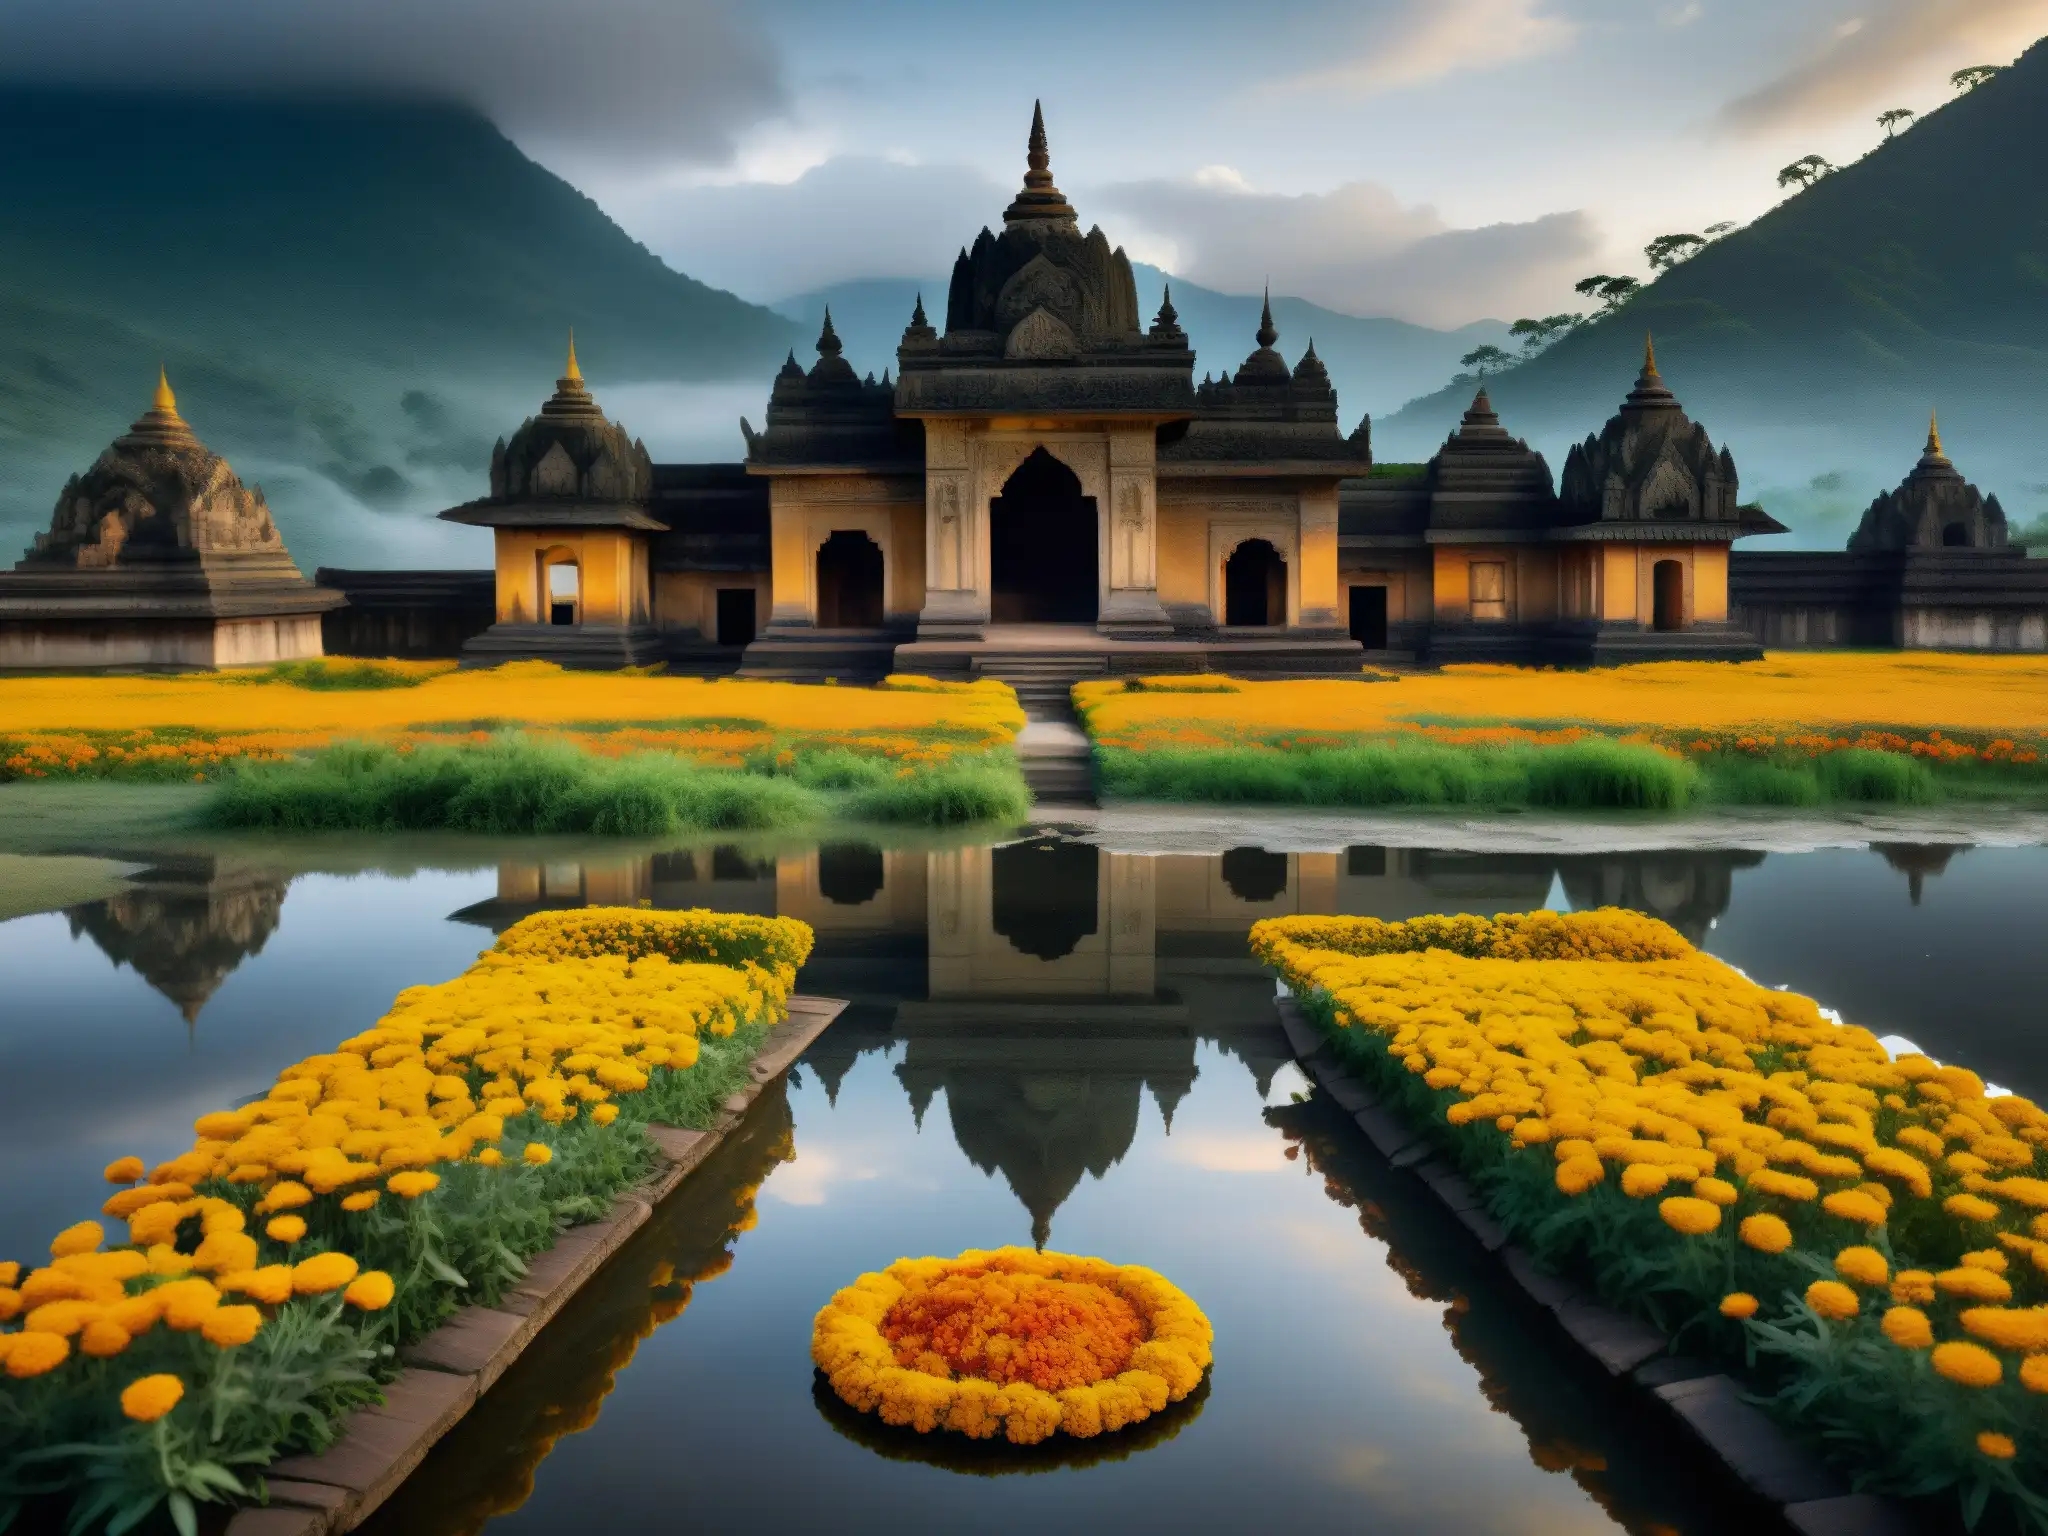 Los espejos malditos de Mayong, India, reflejan la misteriosa y neblinosa atmósfera del paisaje, rodeados de ofrendas de guirnaldas de caléndulas